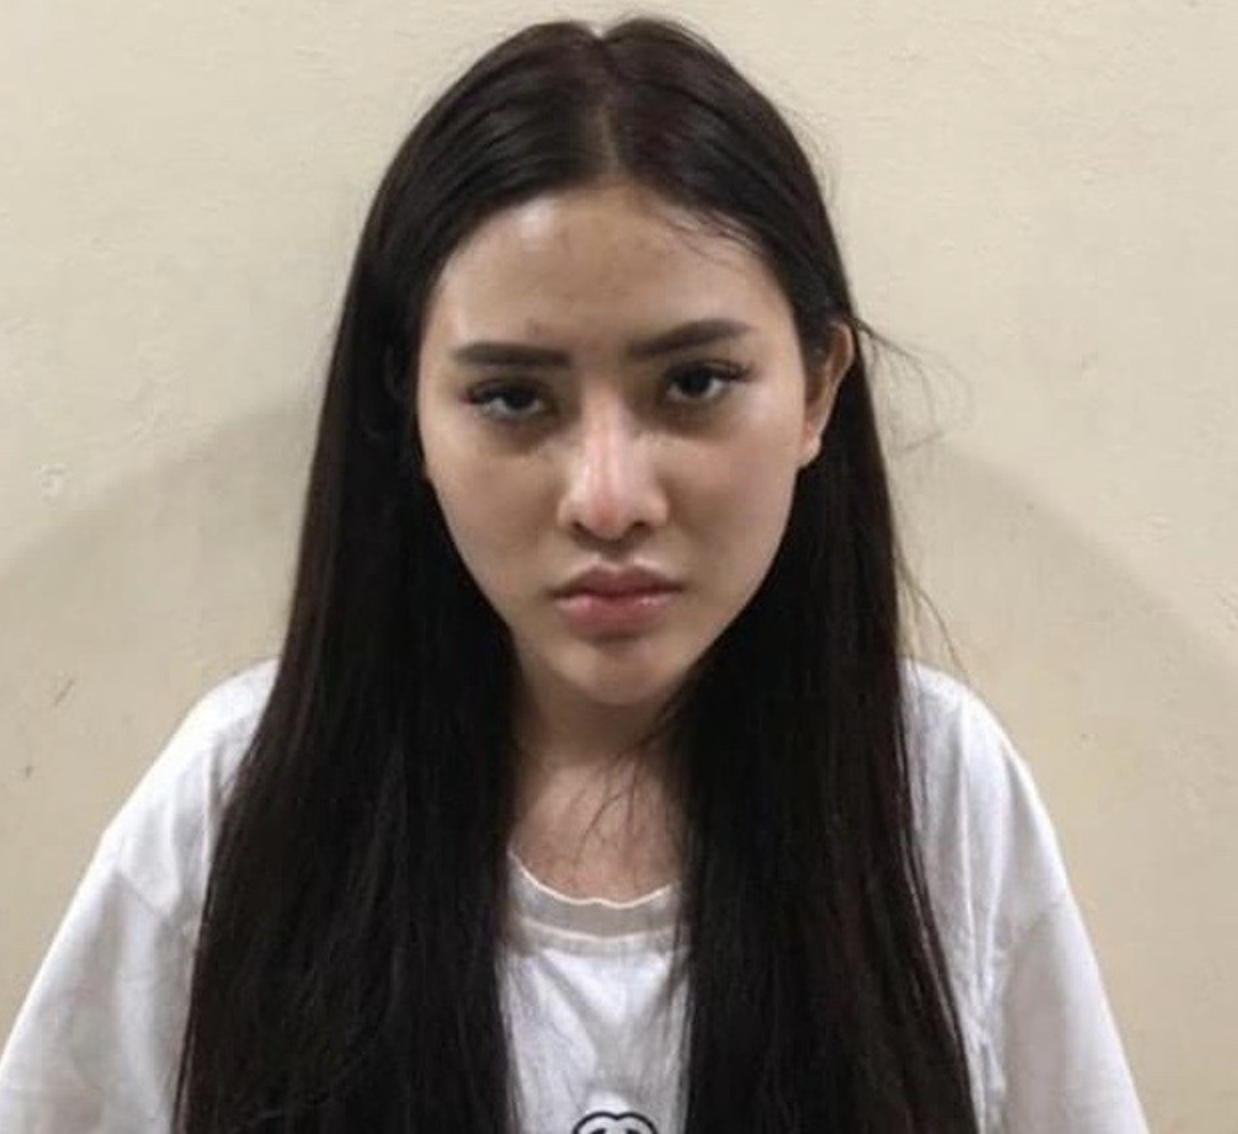 Như Quỳnh từng bị bắt về tội "Môi giới mại dâm" vào ngày 20/4/2022